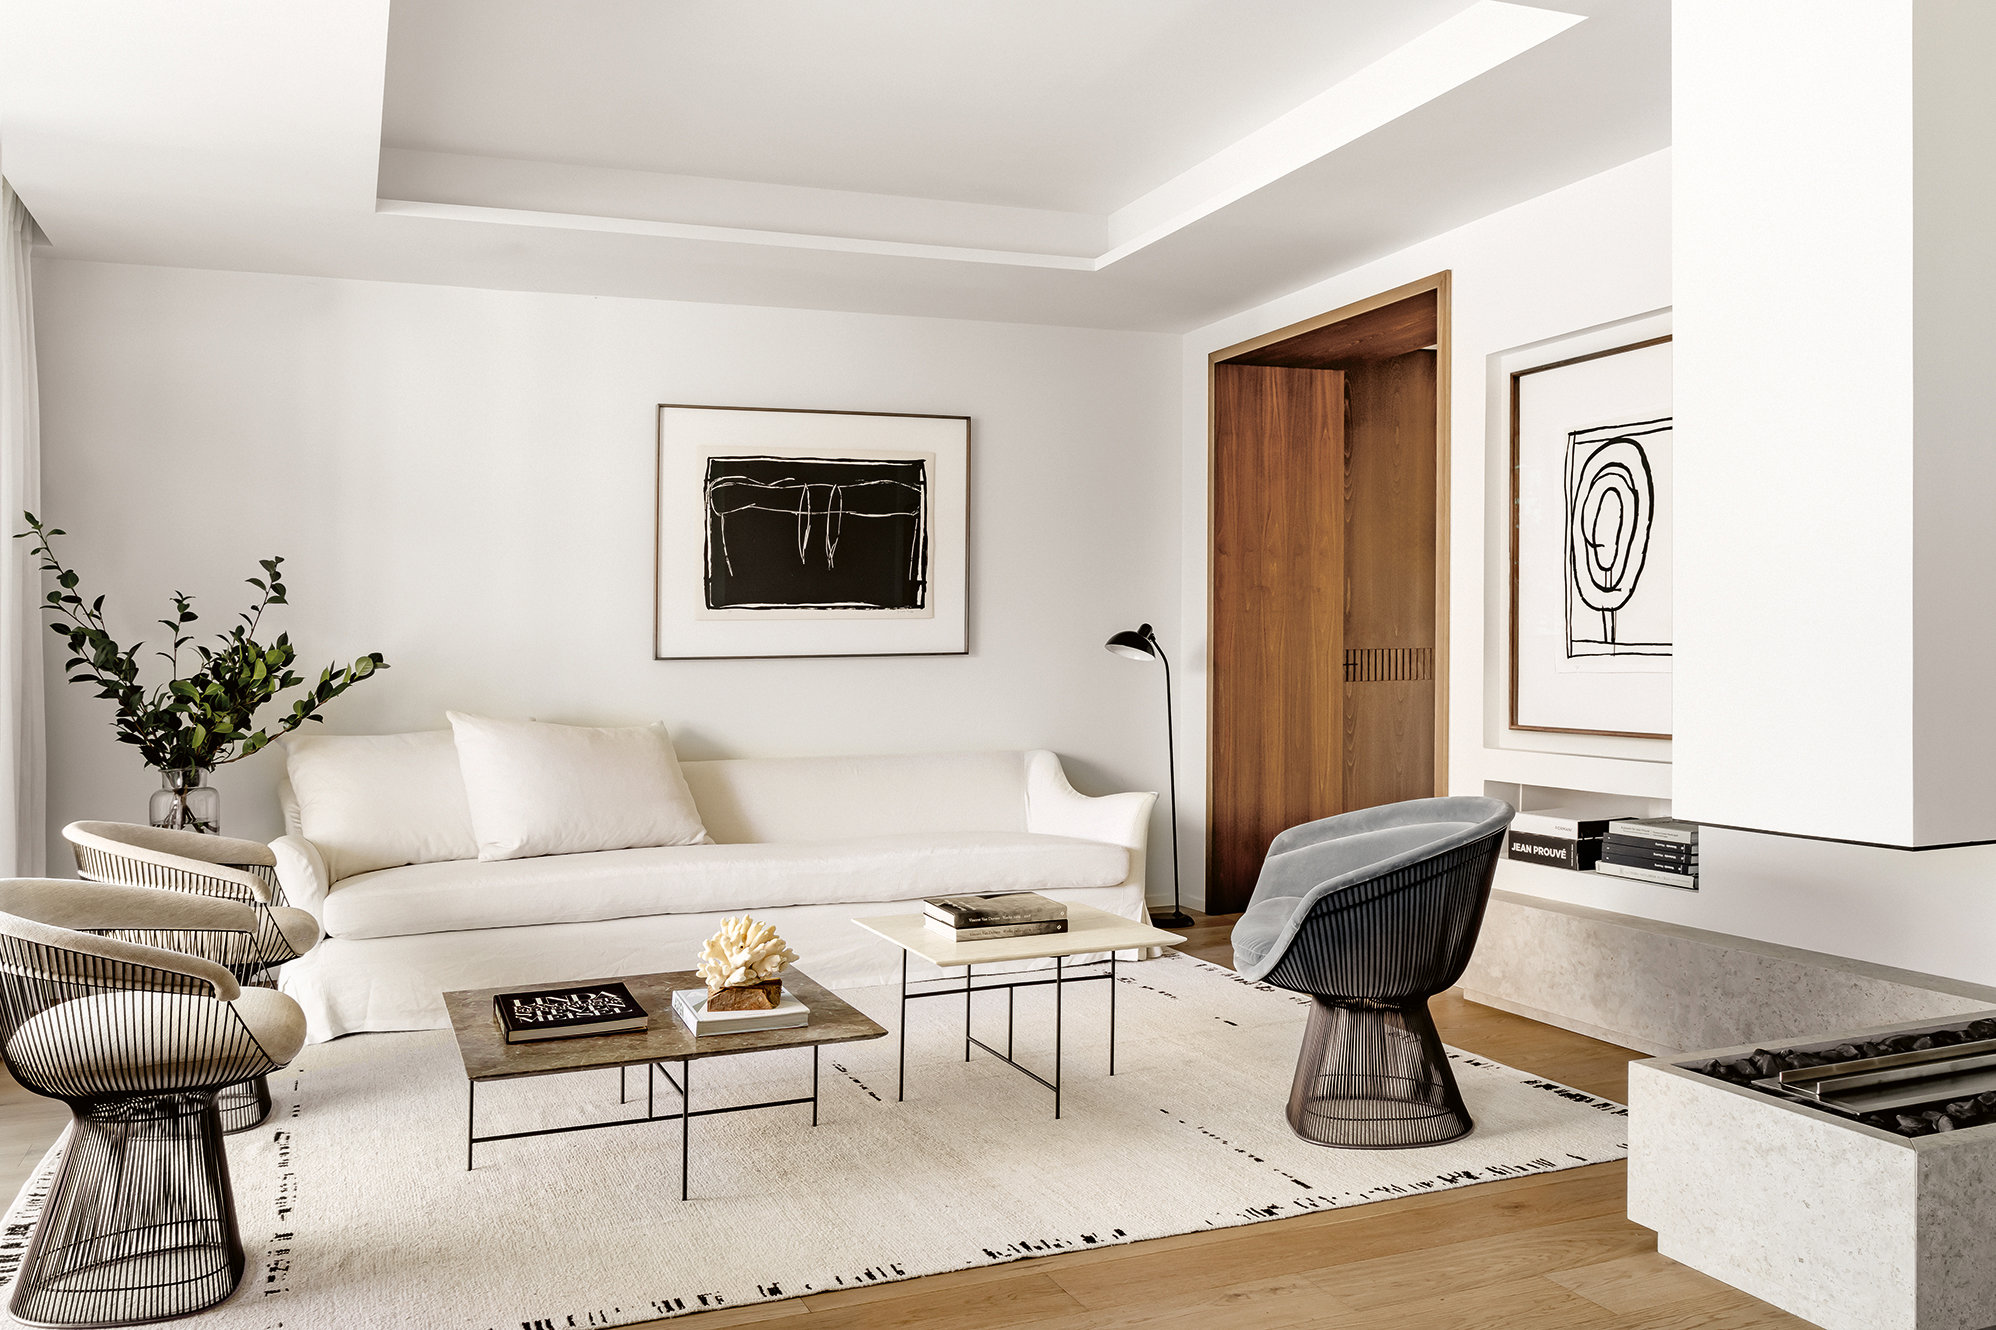 Salón de estar minimalista en blanco y negro